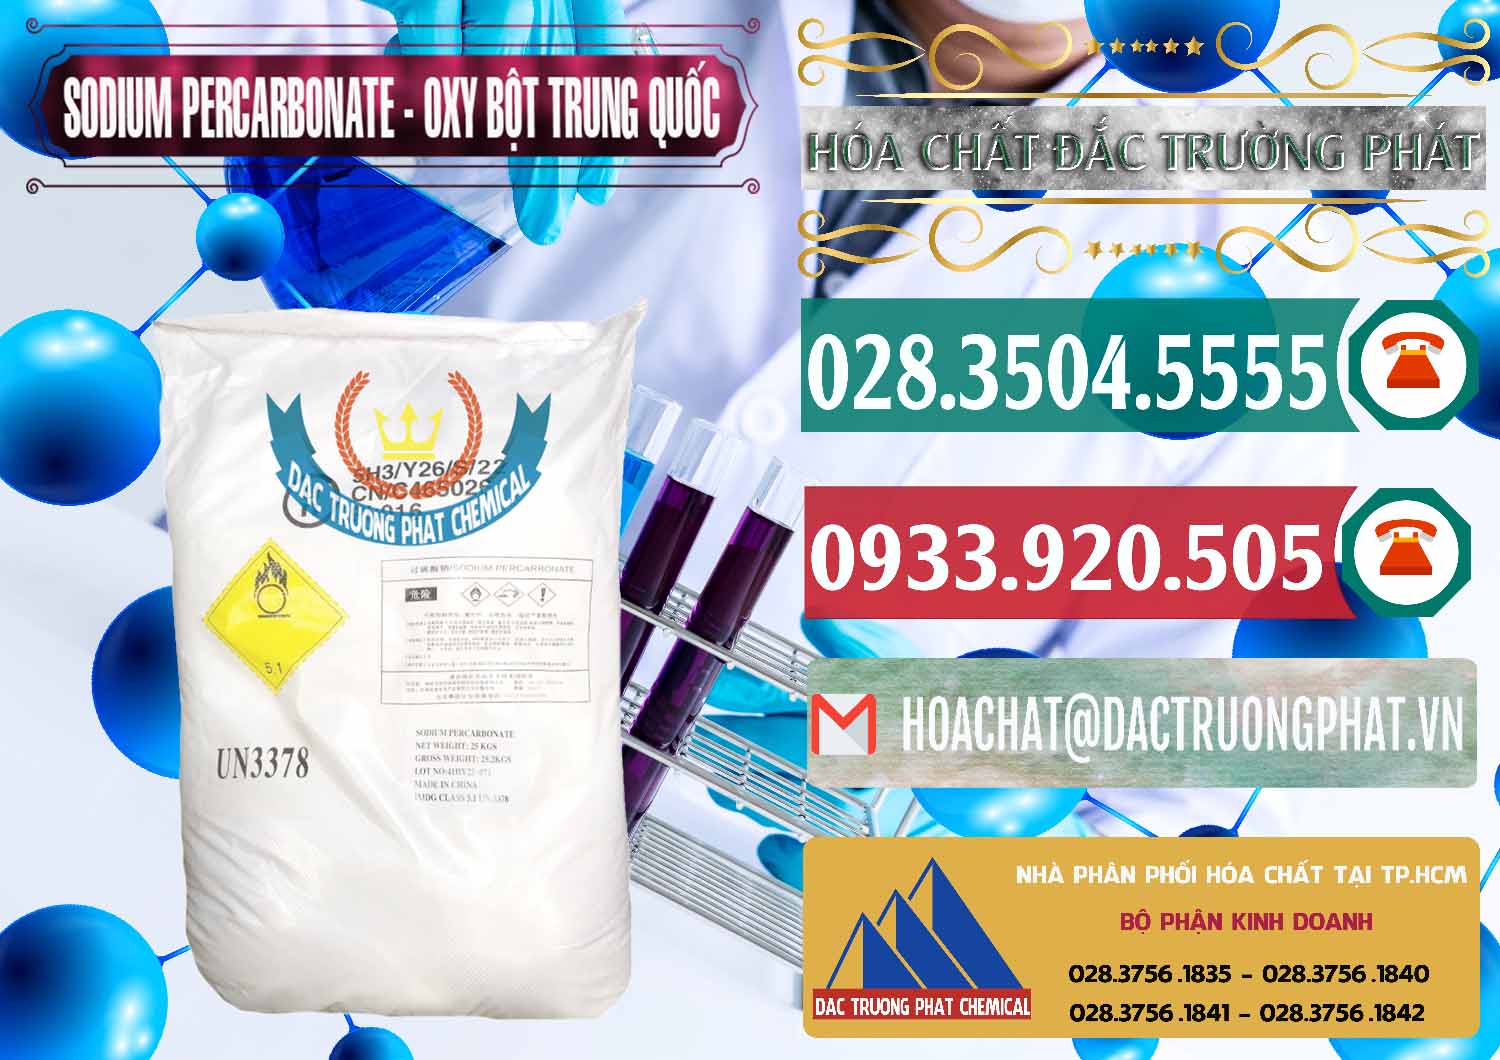 Nơi chuyên phân phối & bán Sodium Percarbonate Dạng Bột Trung Quốc China - 0390 - Chuyên phân phối _ bán hóa chất tại TP.HCM - muabanhoachat.vn